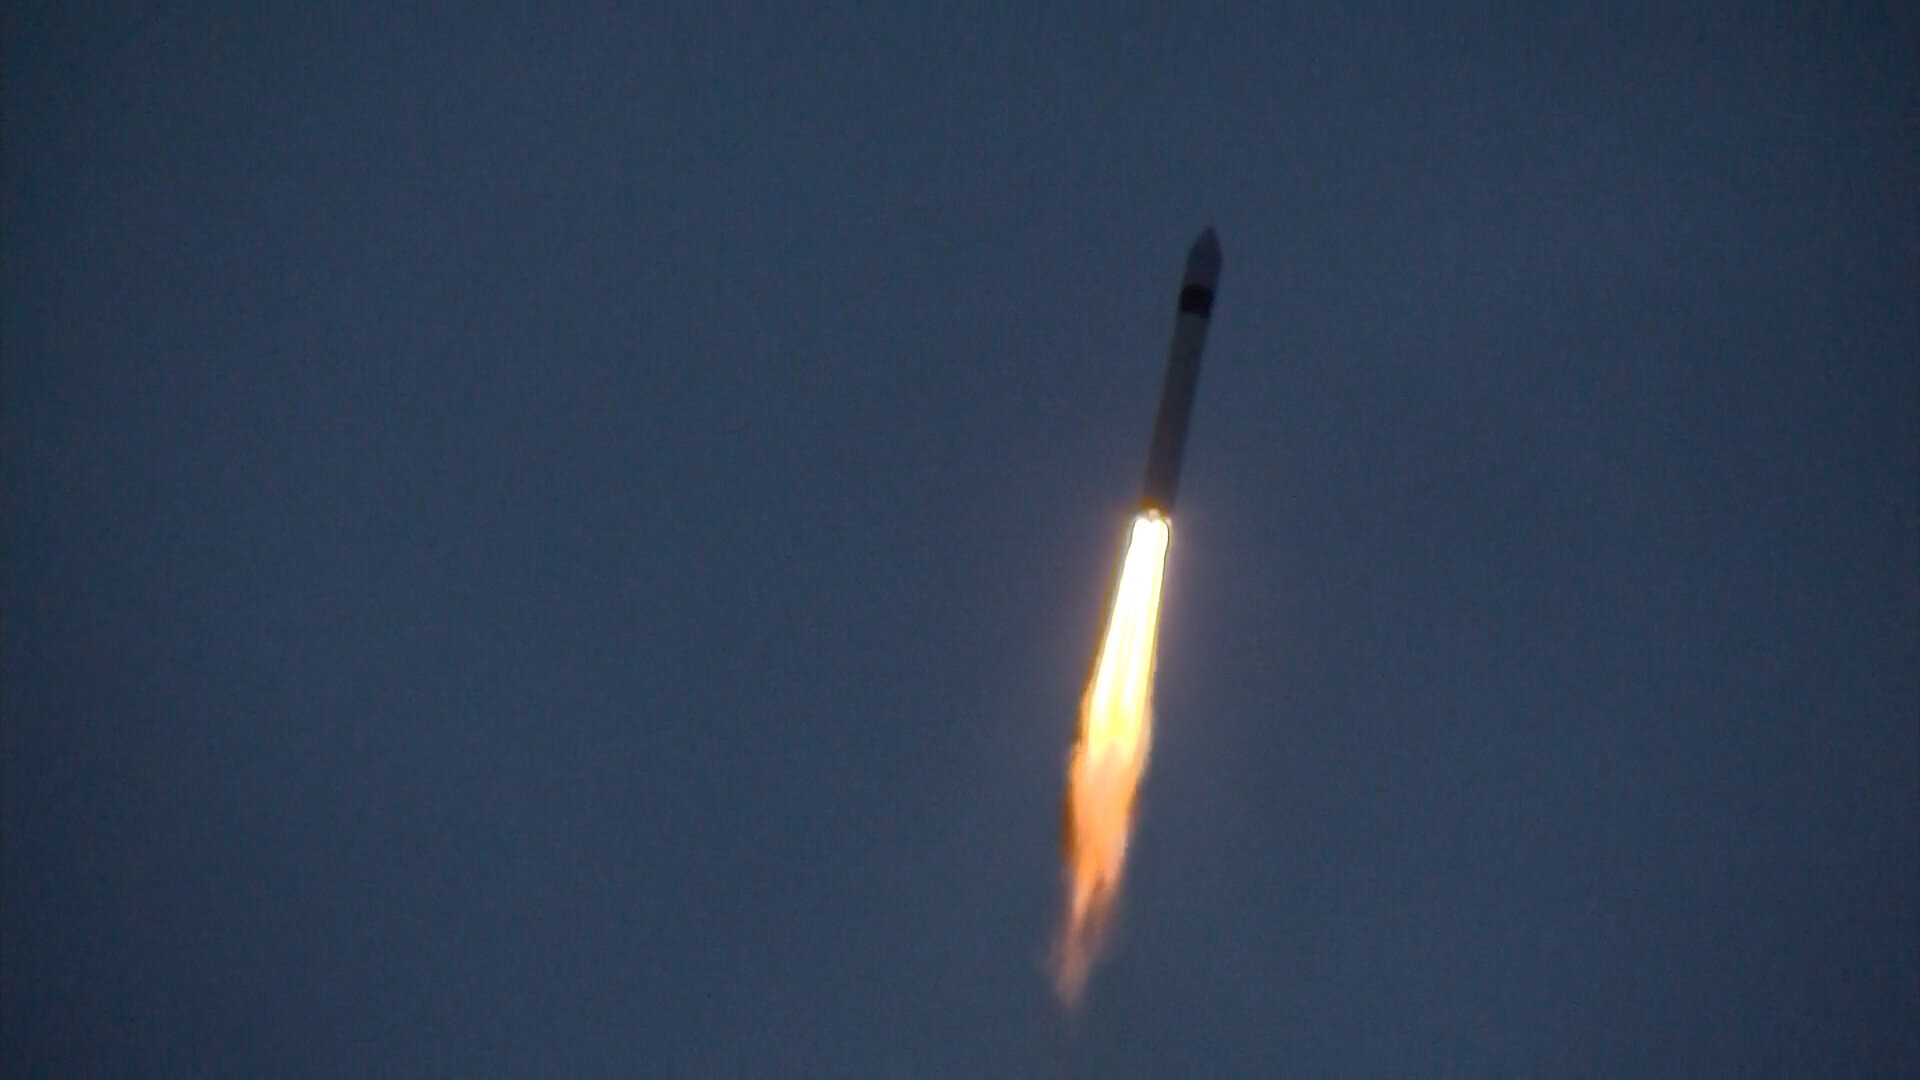 Sentinel-3B liftoff